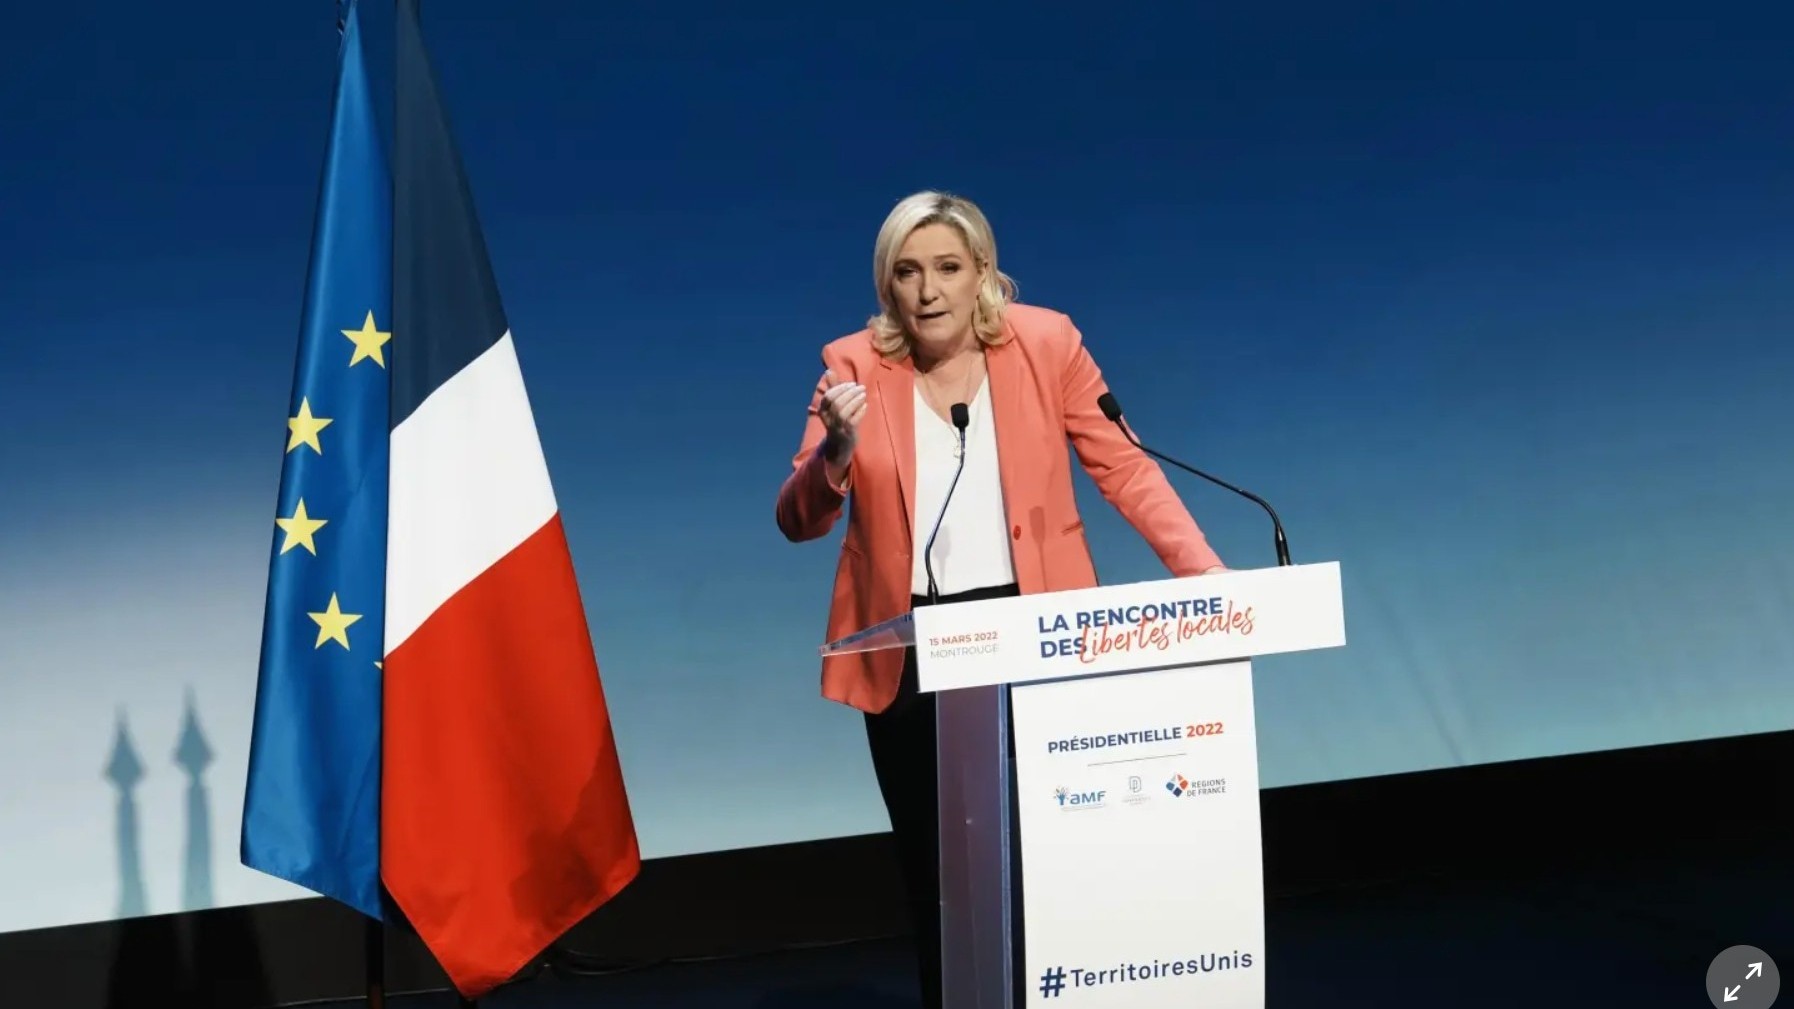 Chính trị gia Le Pen: Tổng thống Macron muốn gây chiến với Nga, tạo 'mối nguy hiểm thực sự' cho nước Pháp